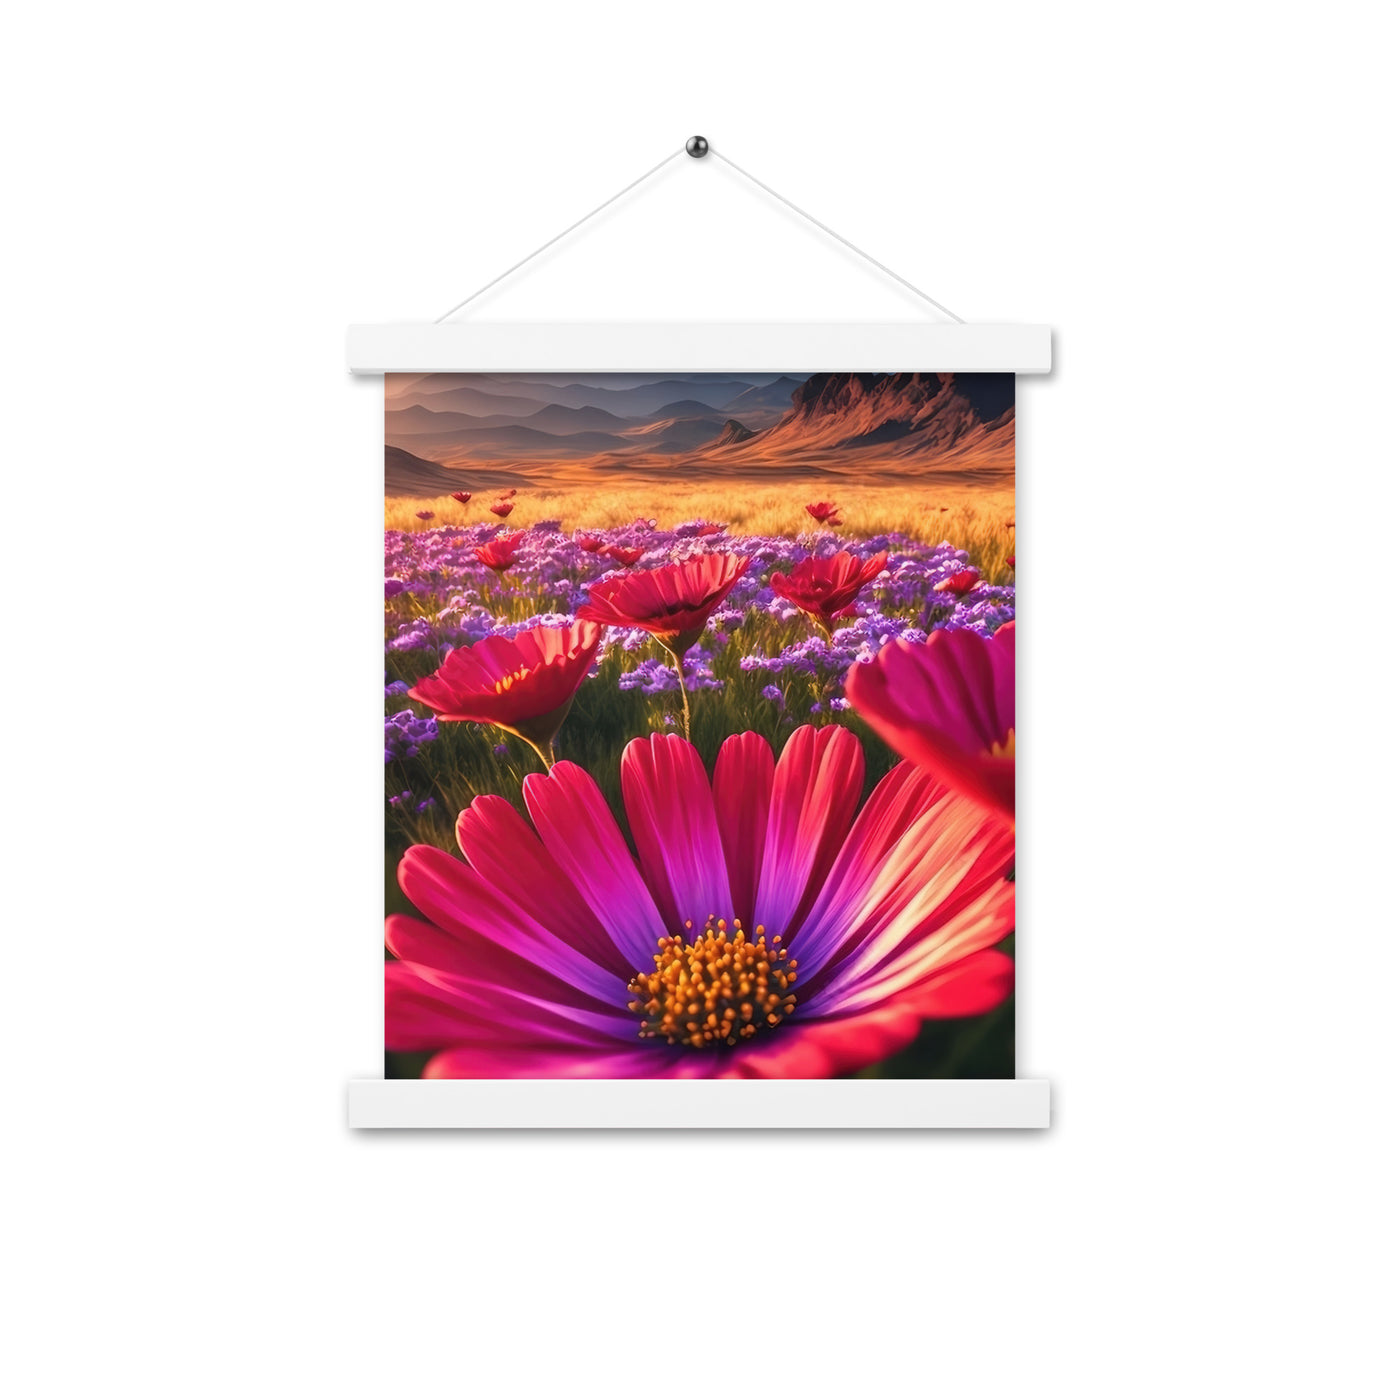 Wünderschöne Blumen und Berge im Hintergrund - Premium Poster mit Aufhängung berge xxx 27.9 x 35.6 cm